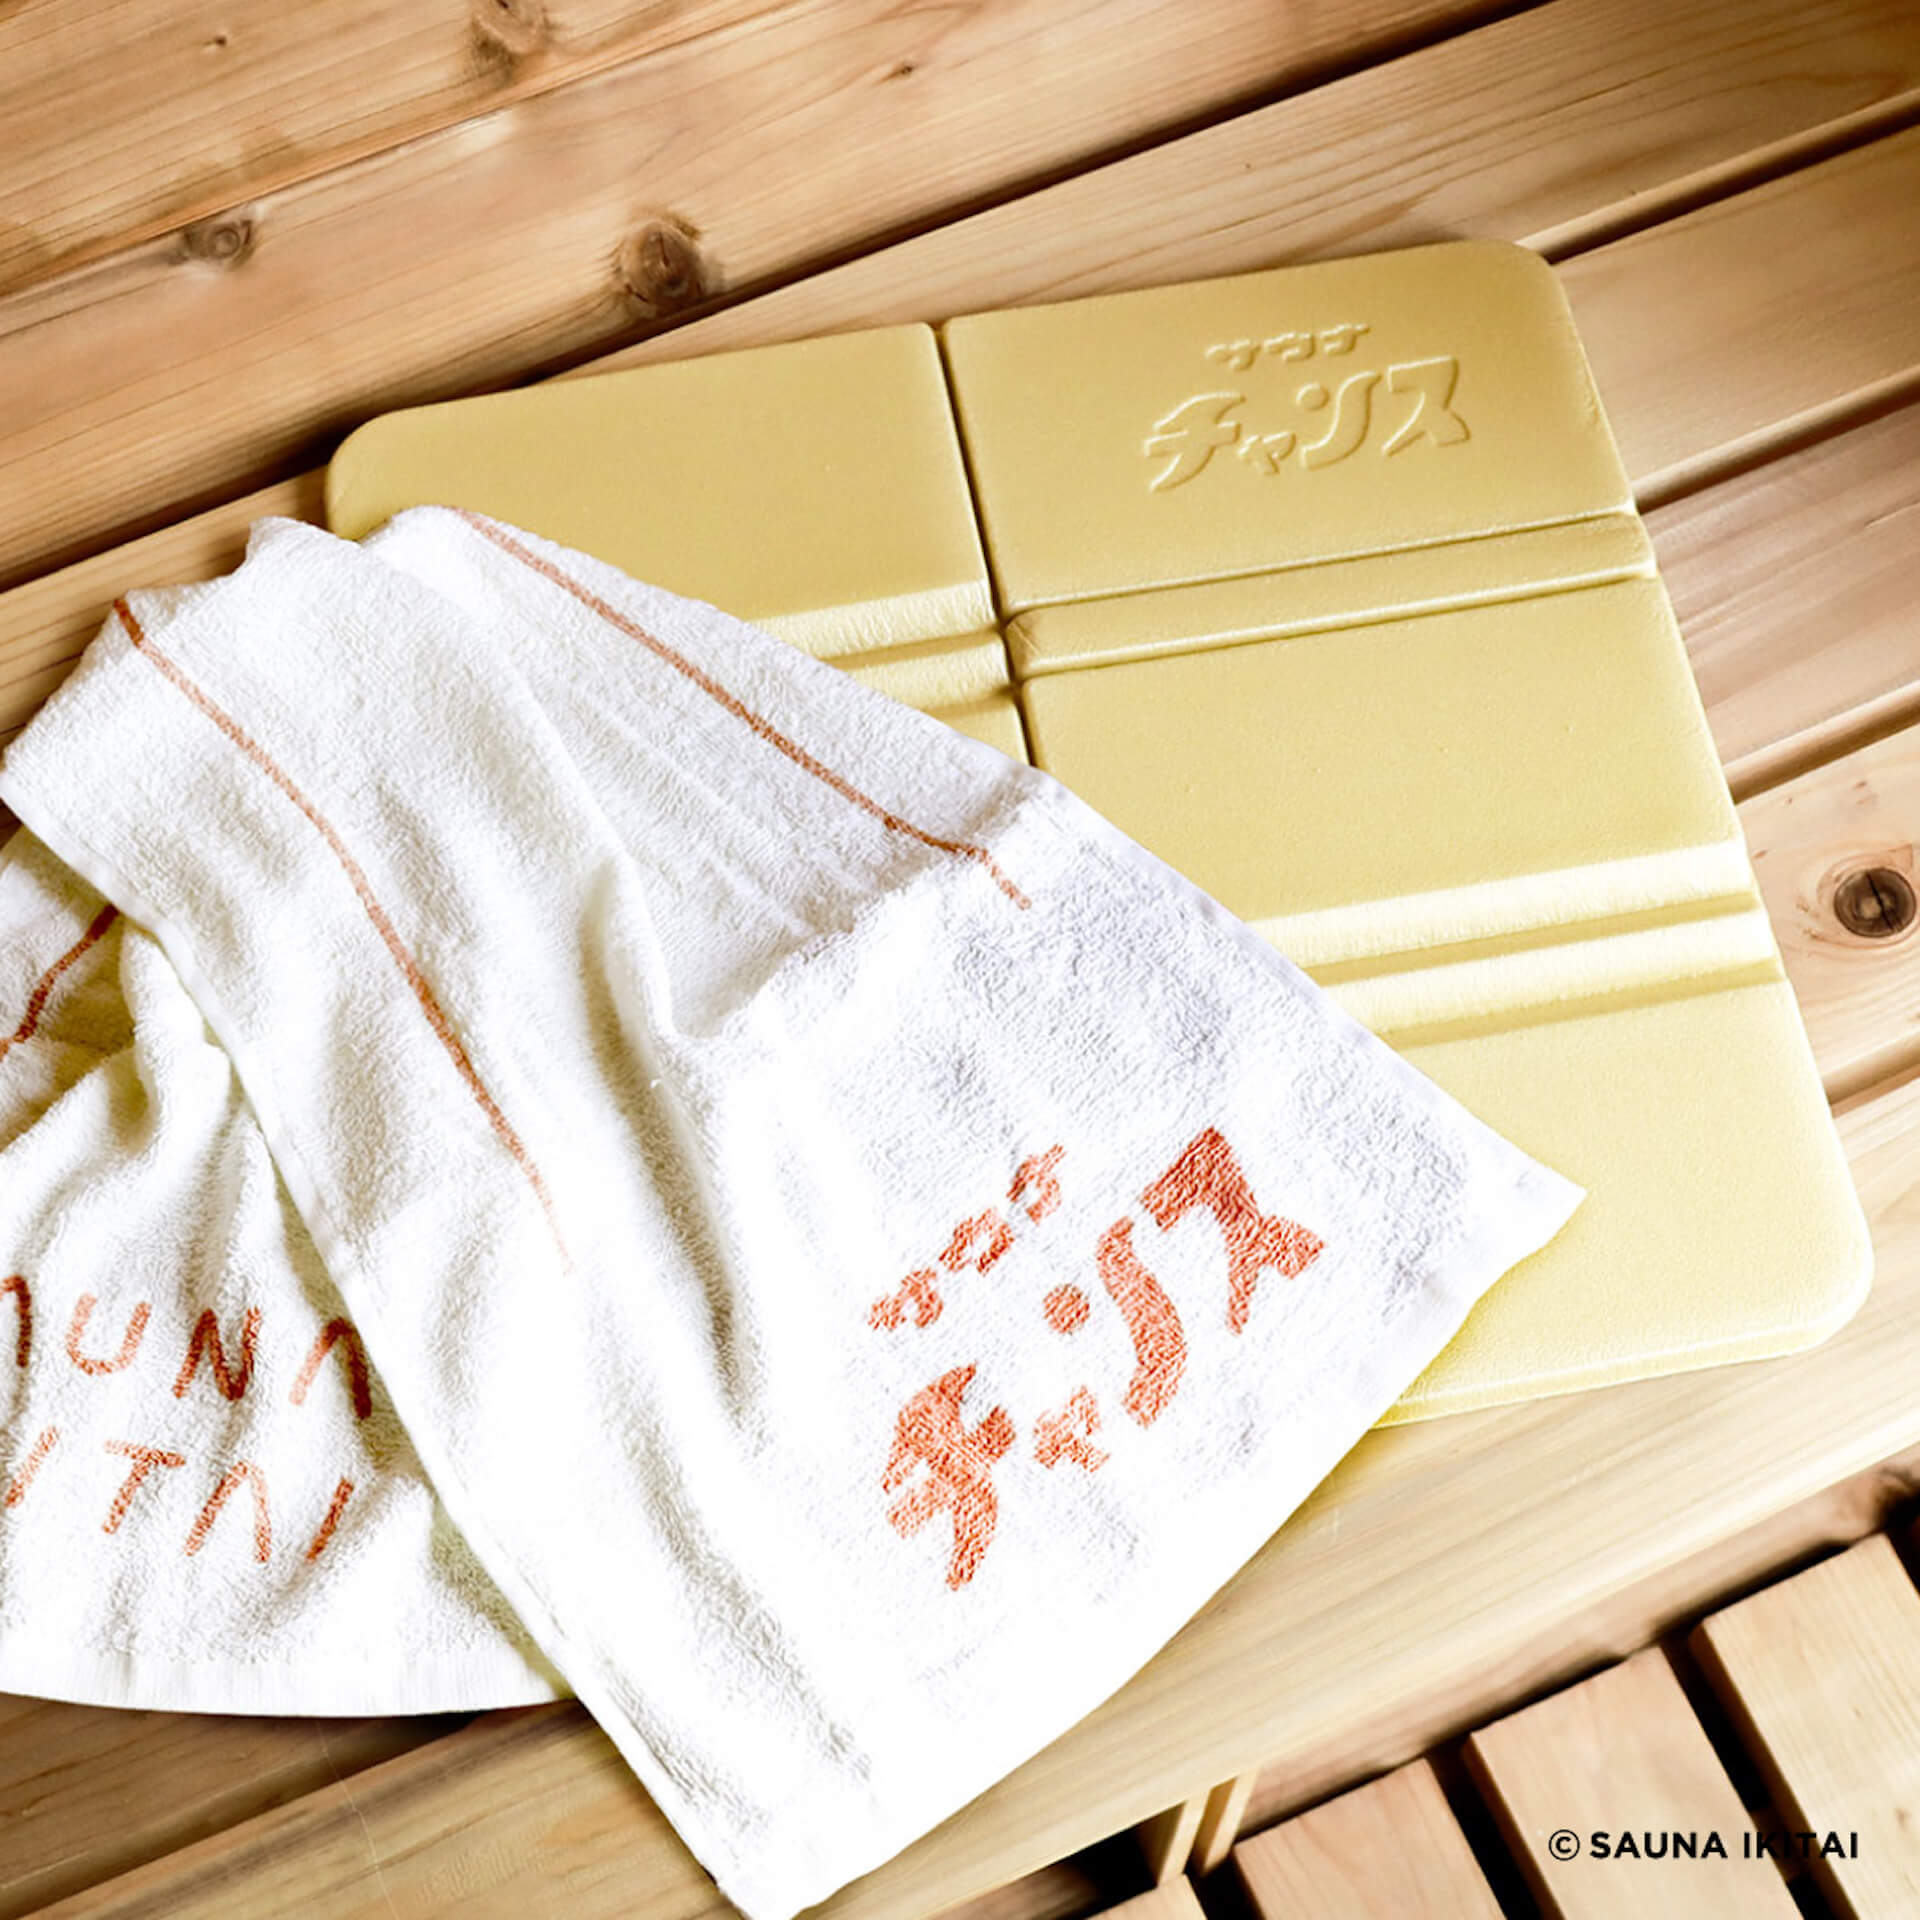 “サウナイキタイ×3COINS”タッグを組んだサウナグッズが発売決定！ fashion221025-sauna-ikitai-04